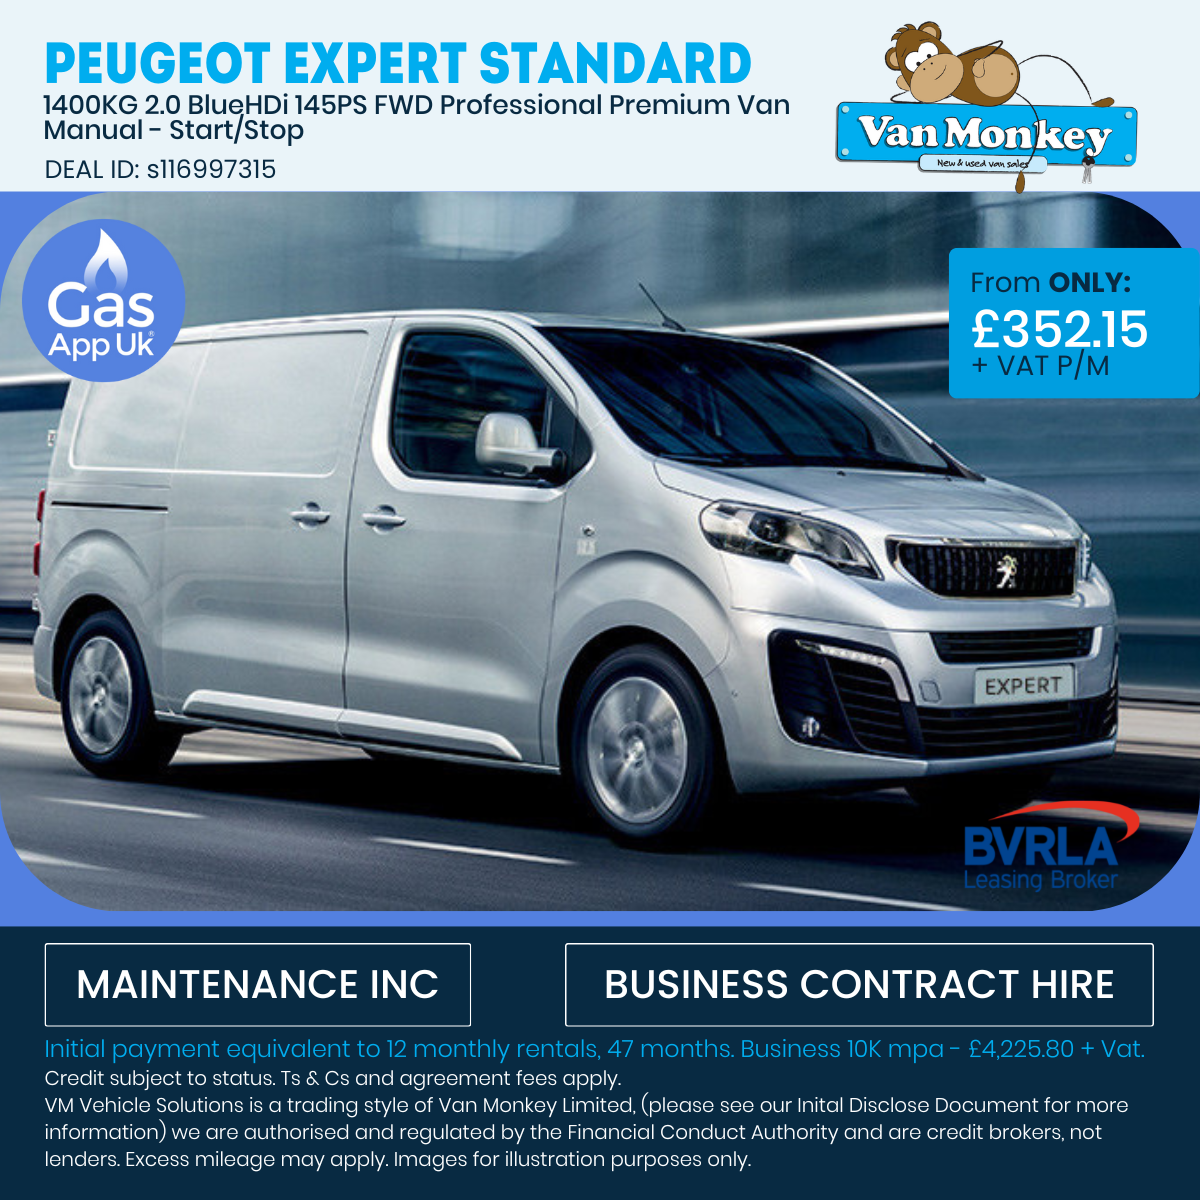 Peugeot Expert Standard - Gas App